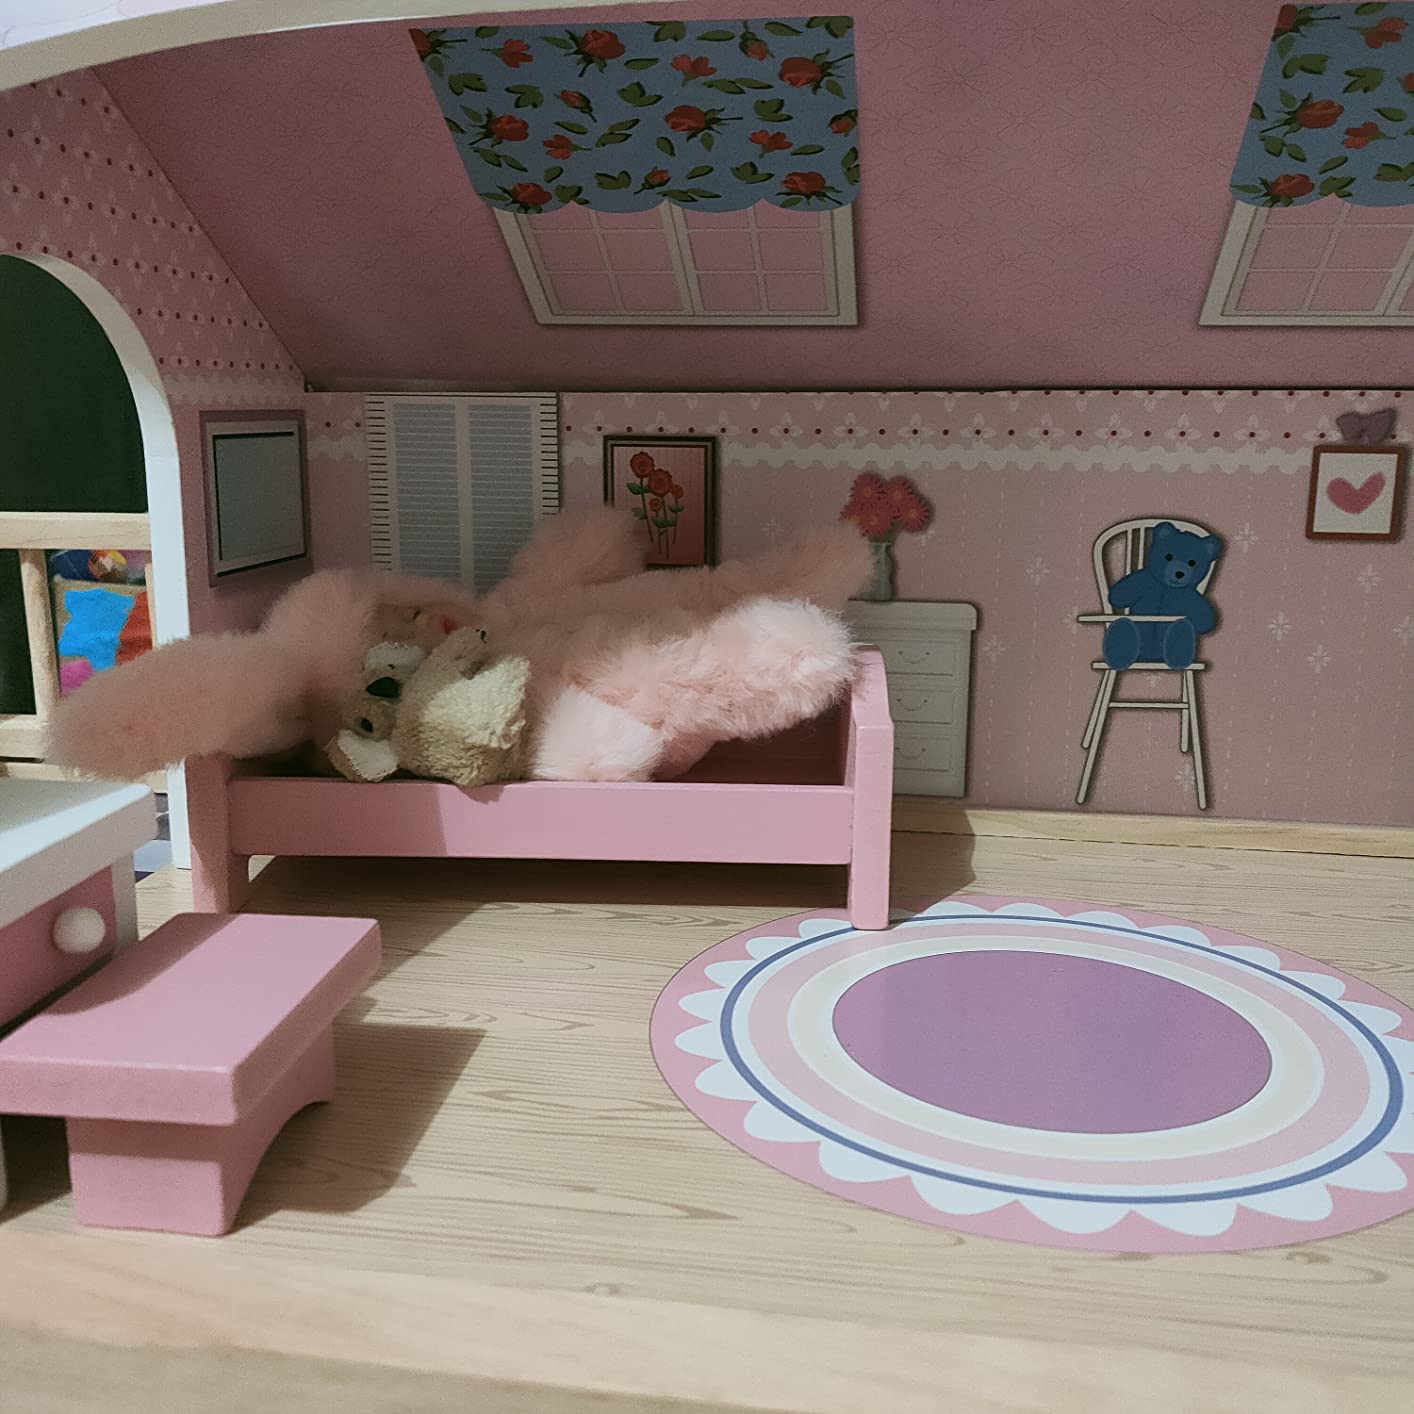 COSTWAY Maison de Poupée en Bois à 3 Etages avec 5 Pièces et 10 Meubles,  Maison Barbie Rose avec Autocollants Princesses, Jeu d'Imitation pour  Enfants de 3-7 Ans, 60 x 25 x 70 cm